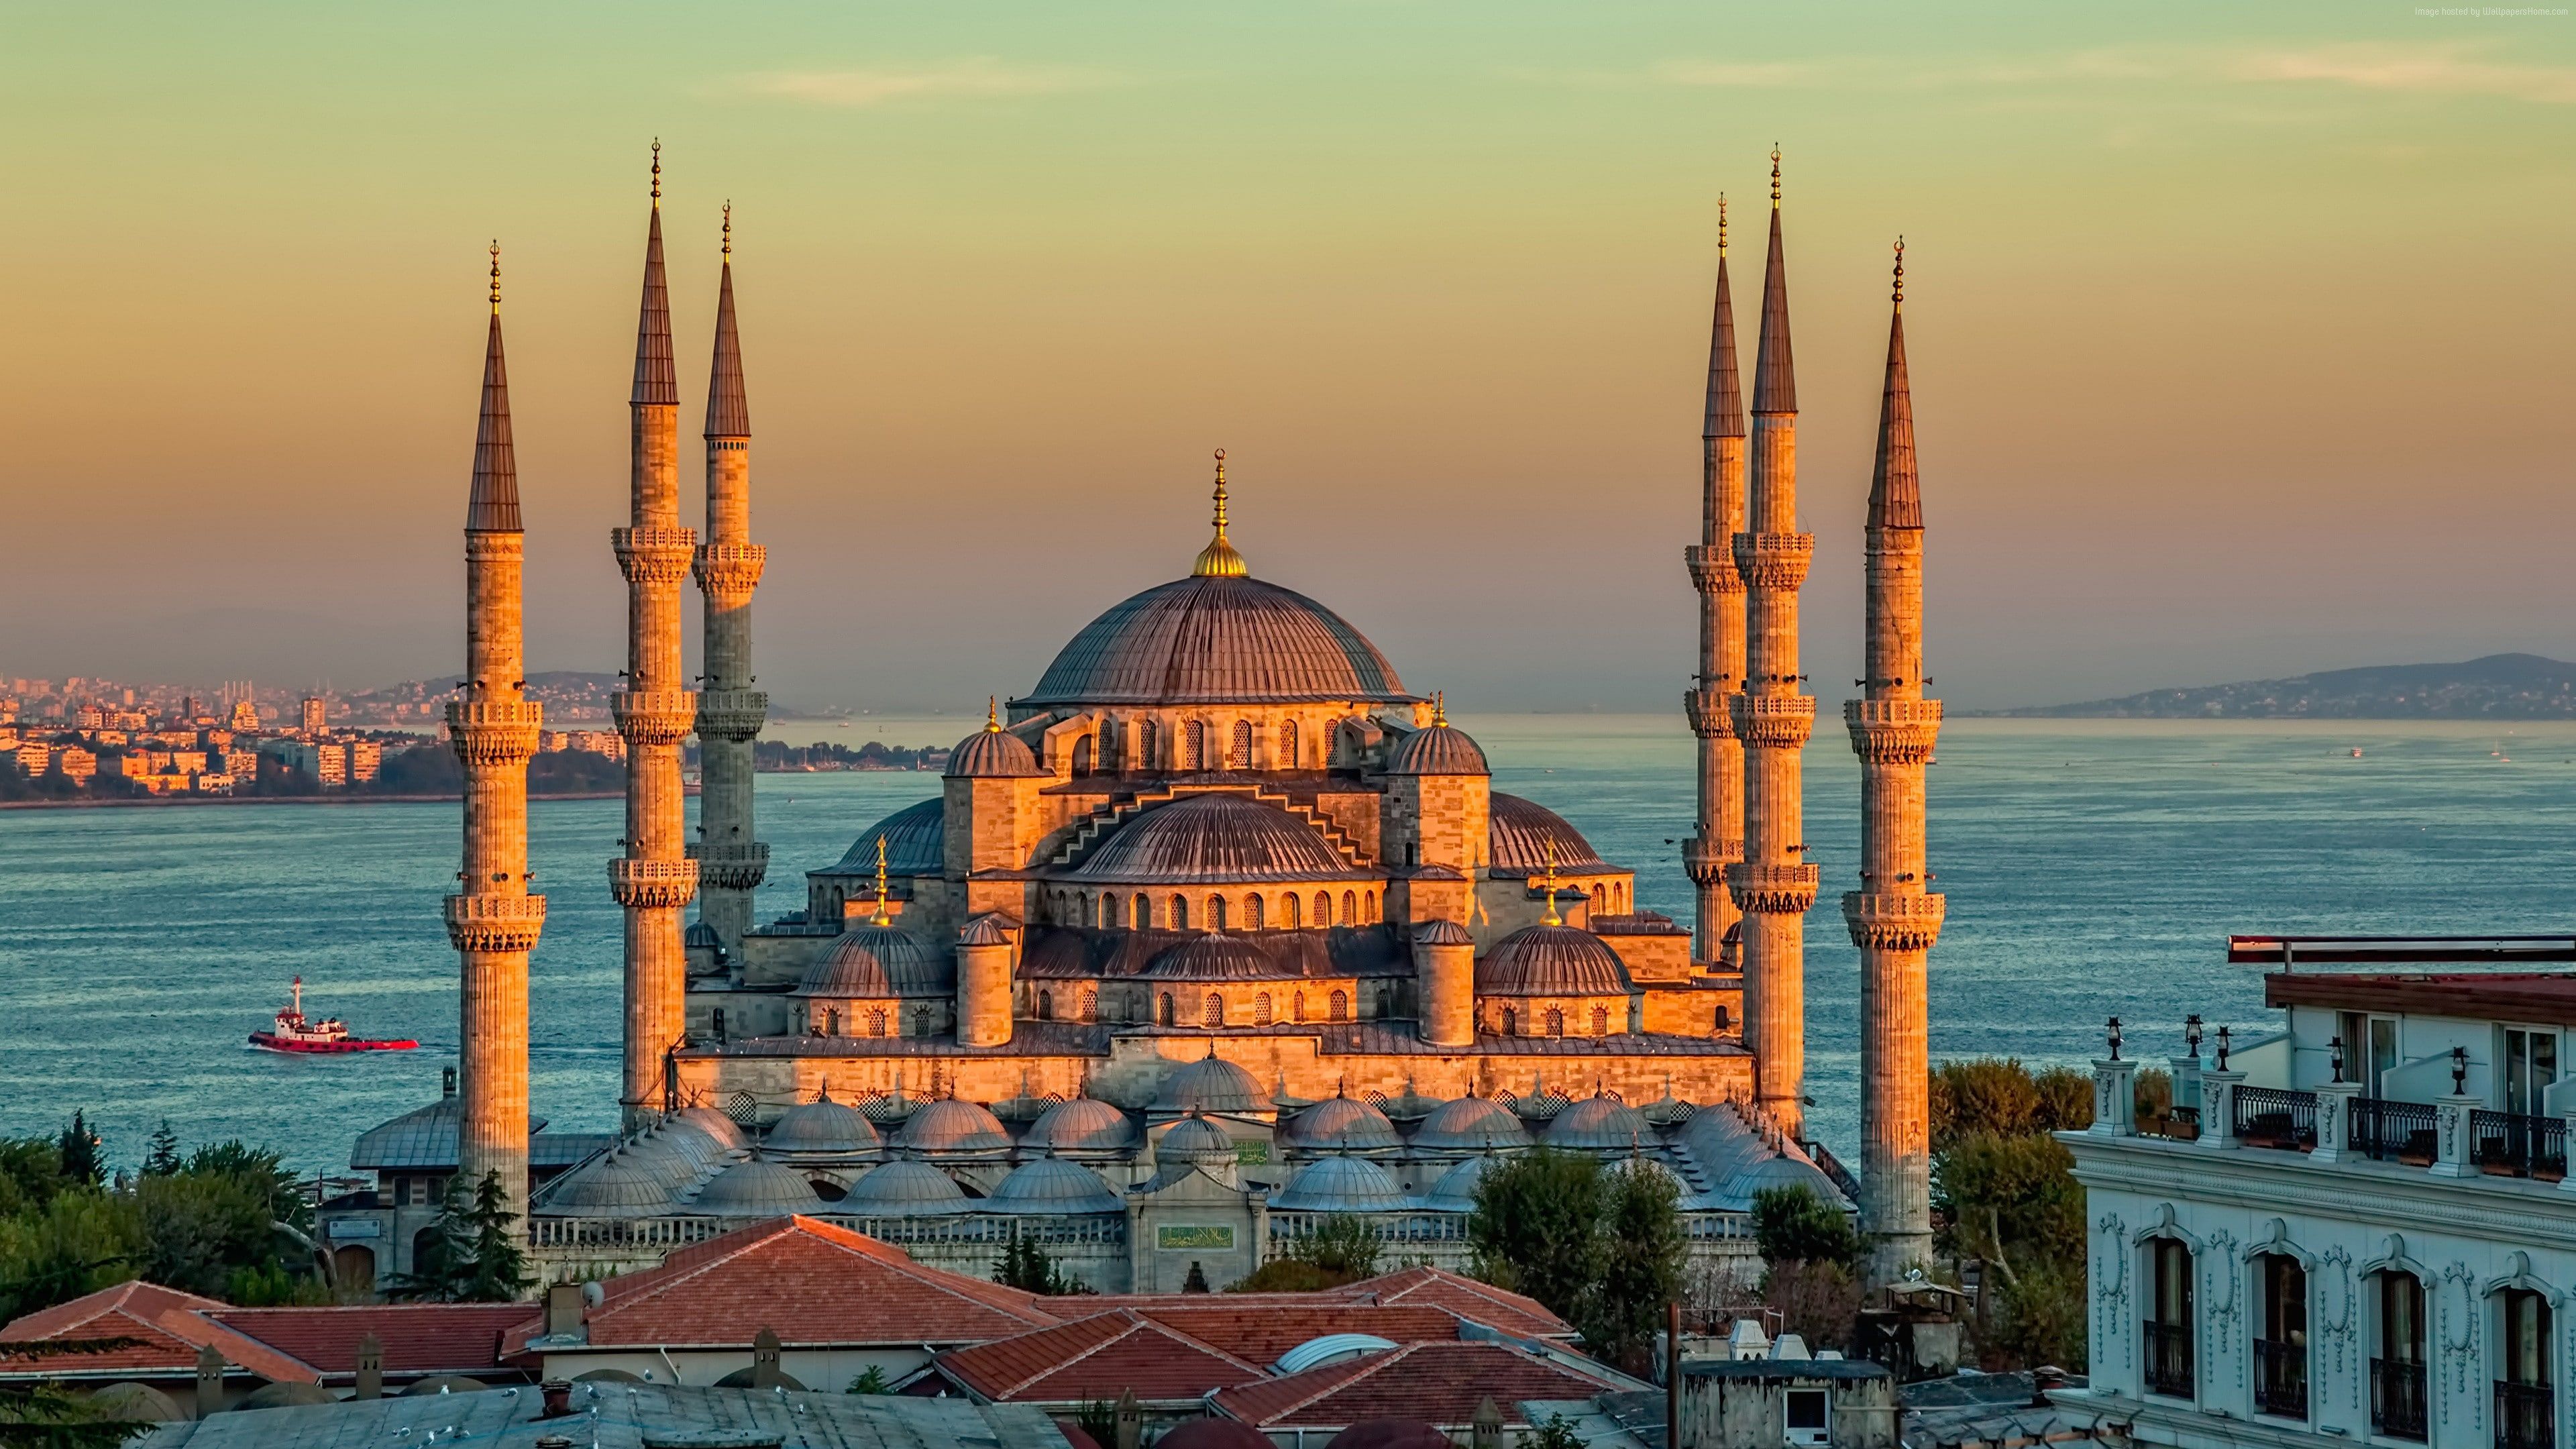 4k Sultan Ahmed Mosque #Istanbul #Turkey #sunrise K #wallpaper #hdwallpaper #desktop. Cheap hotels in istanbul, Blue mosque, Istanbul hotels